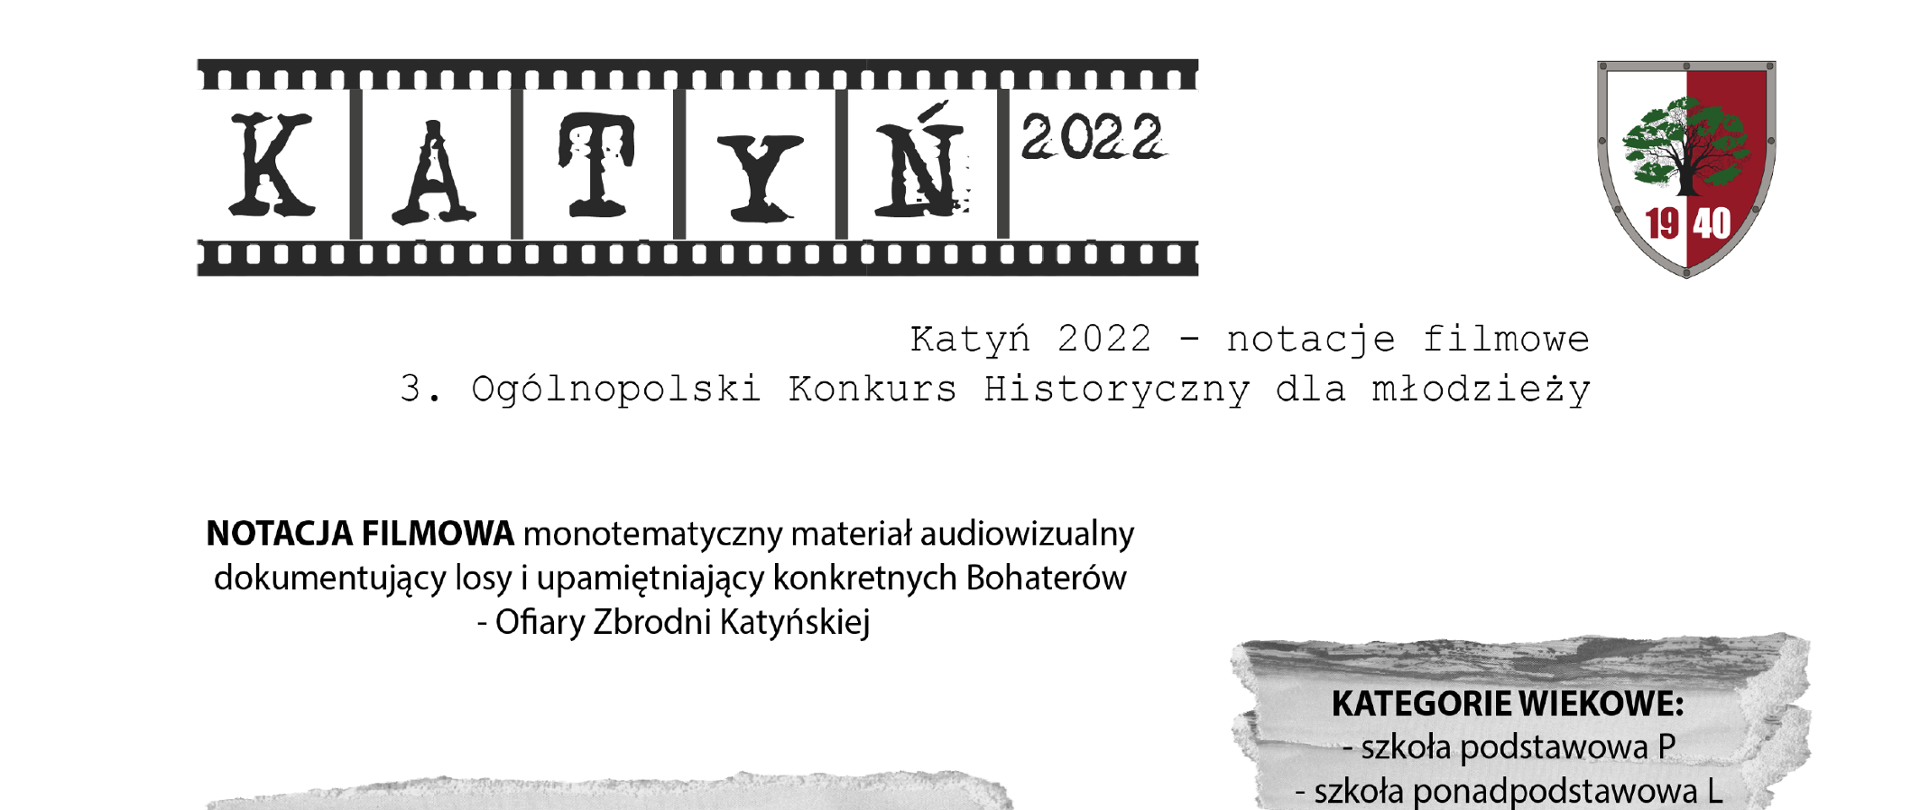 Grafika promująca 3. Ogólnopolski Konkurs Historyczny dla młodzieży